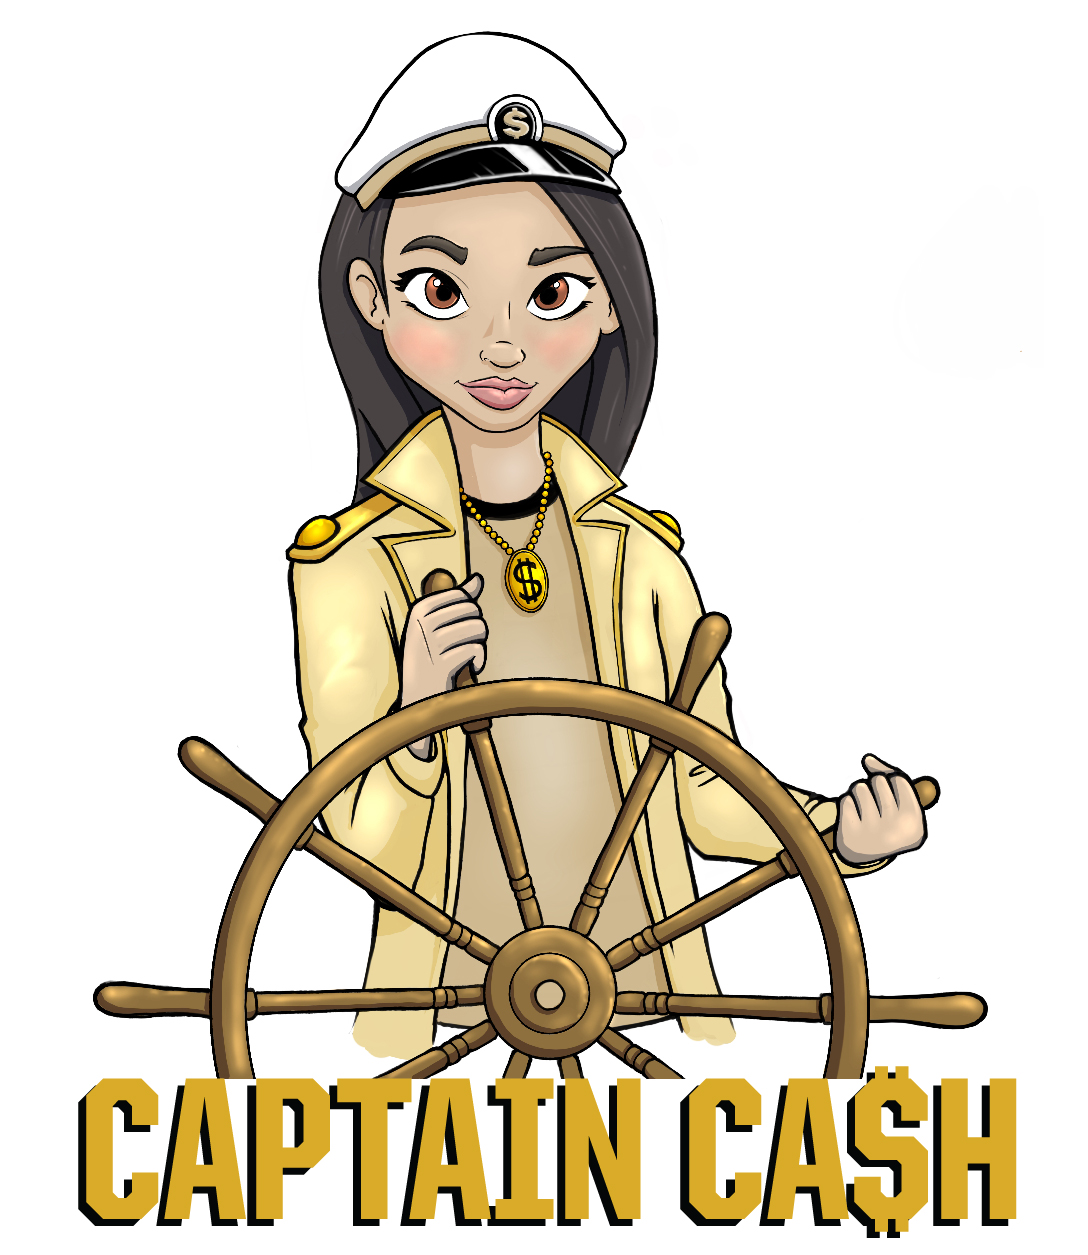 Captain Cash illustration